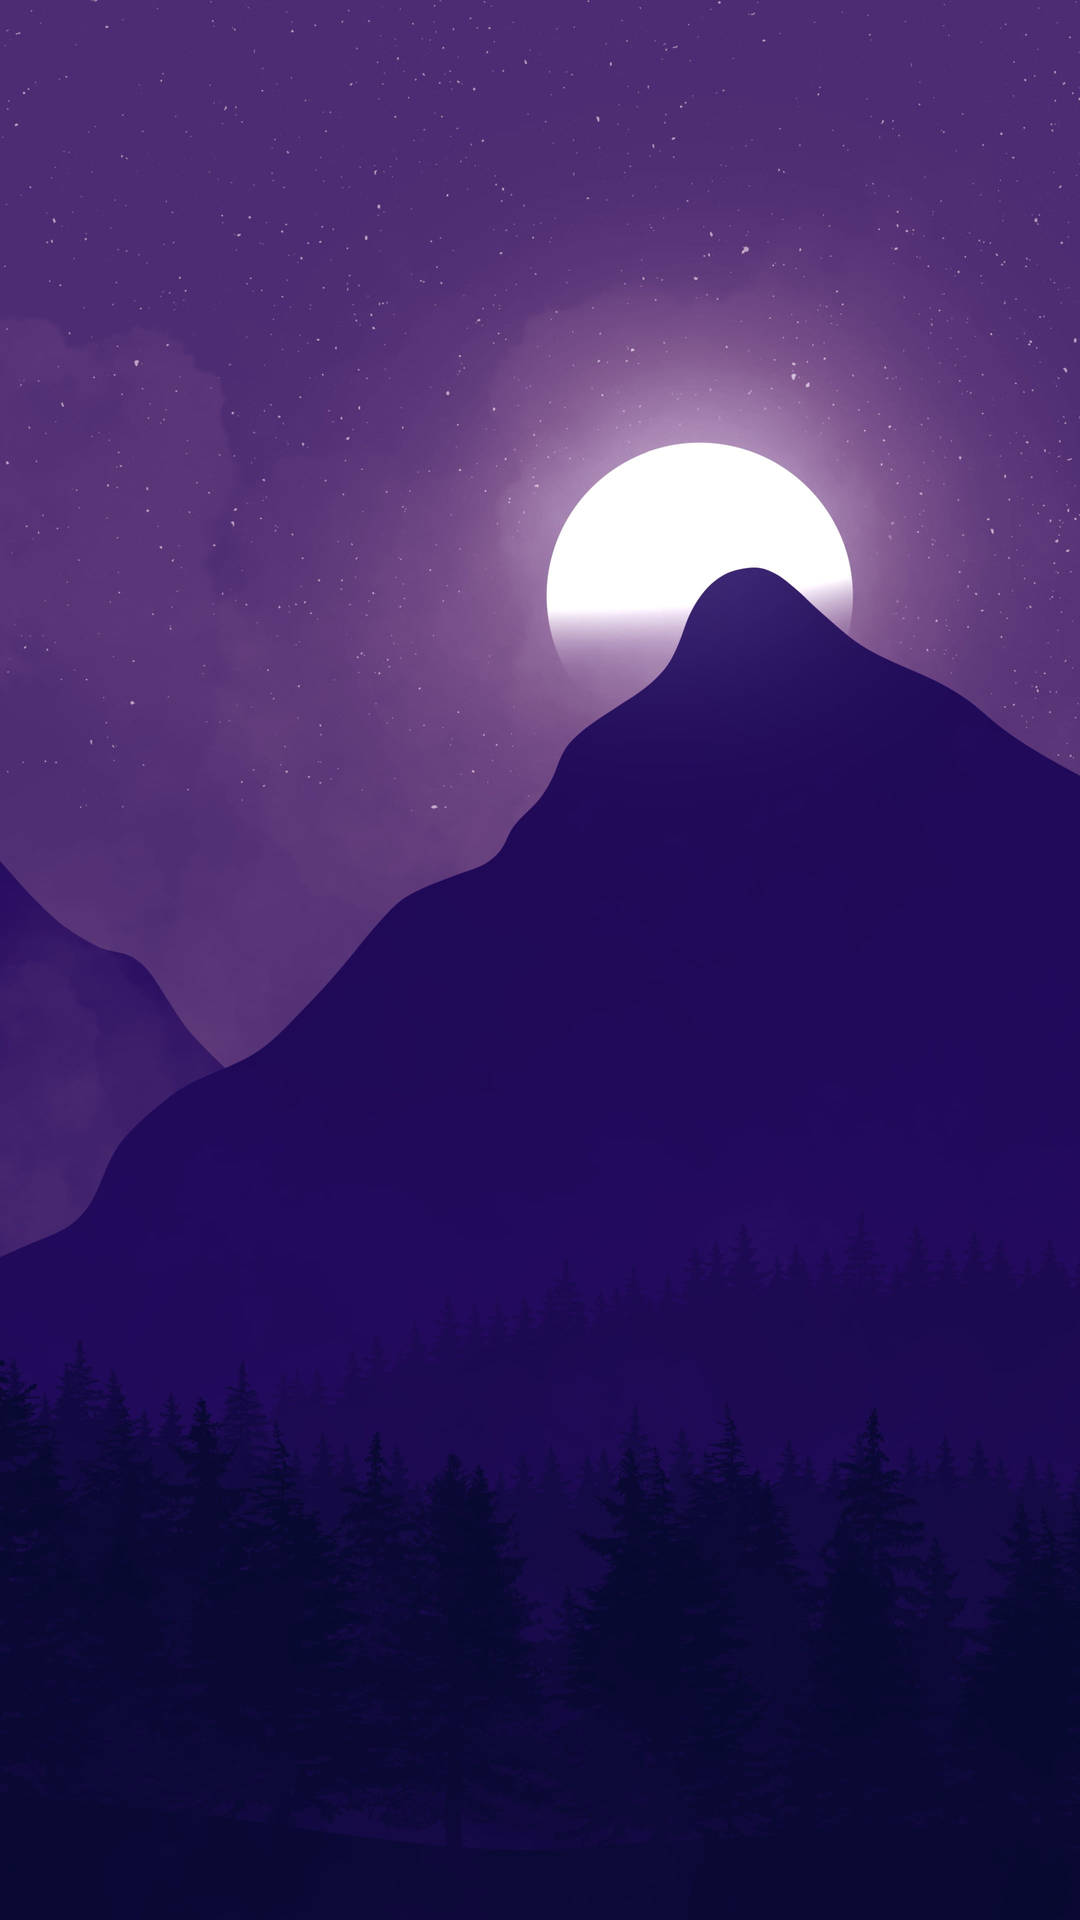 Dark Purple Mountain Moon Sky